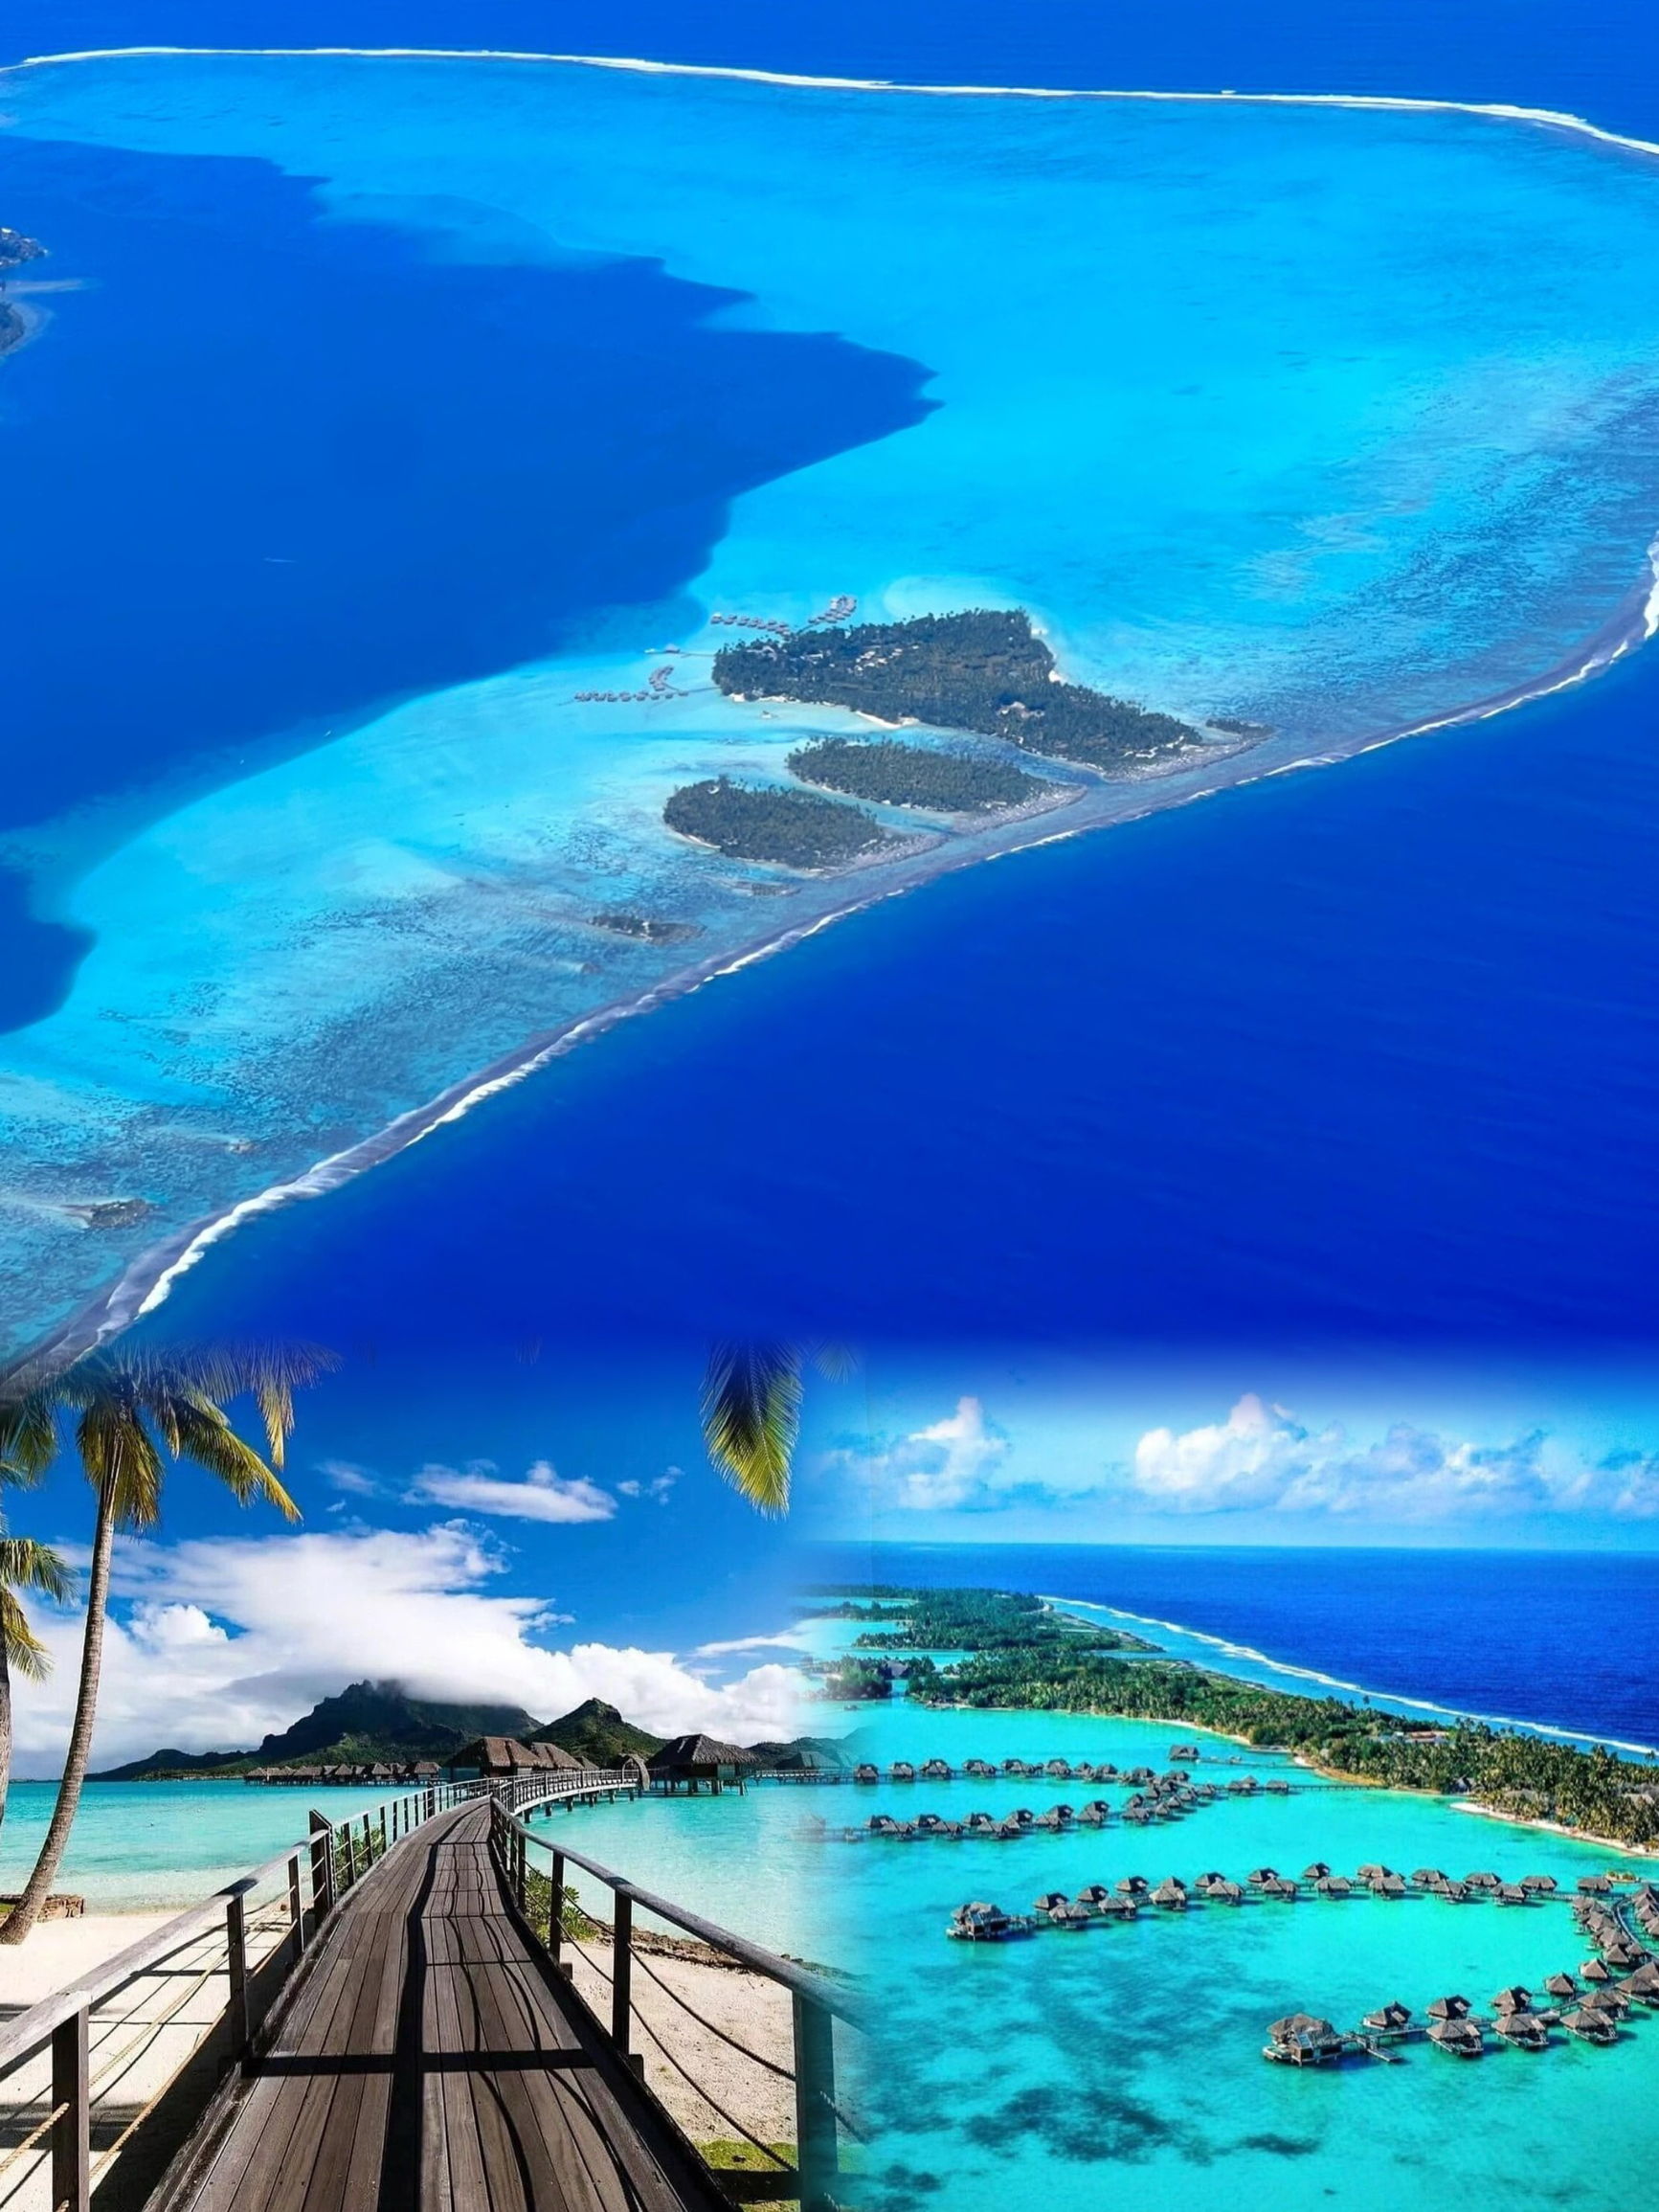 海岛界爱马仕 | 世界上最性感的岛屿之一